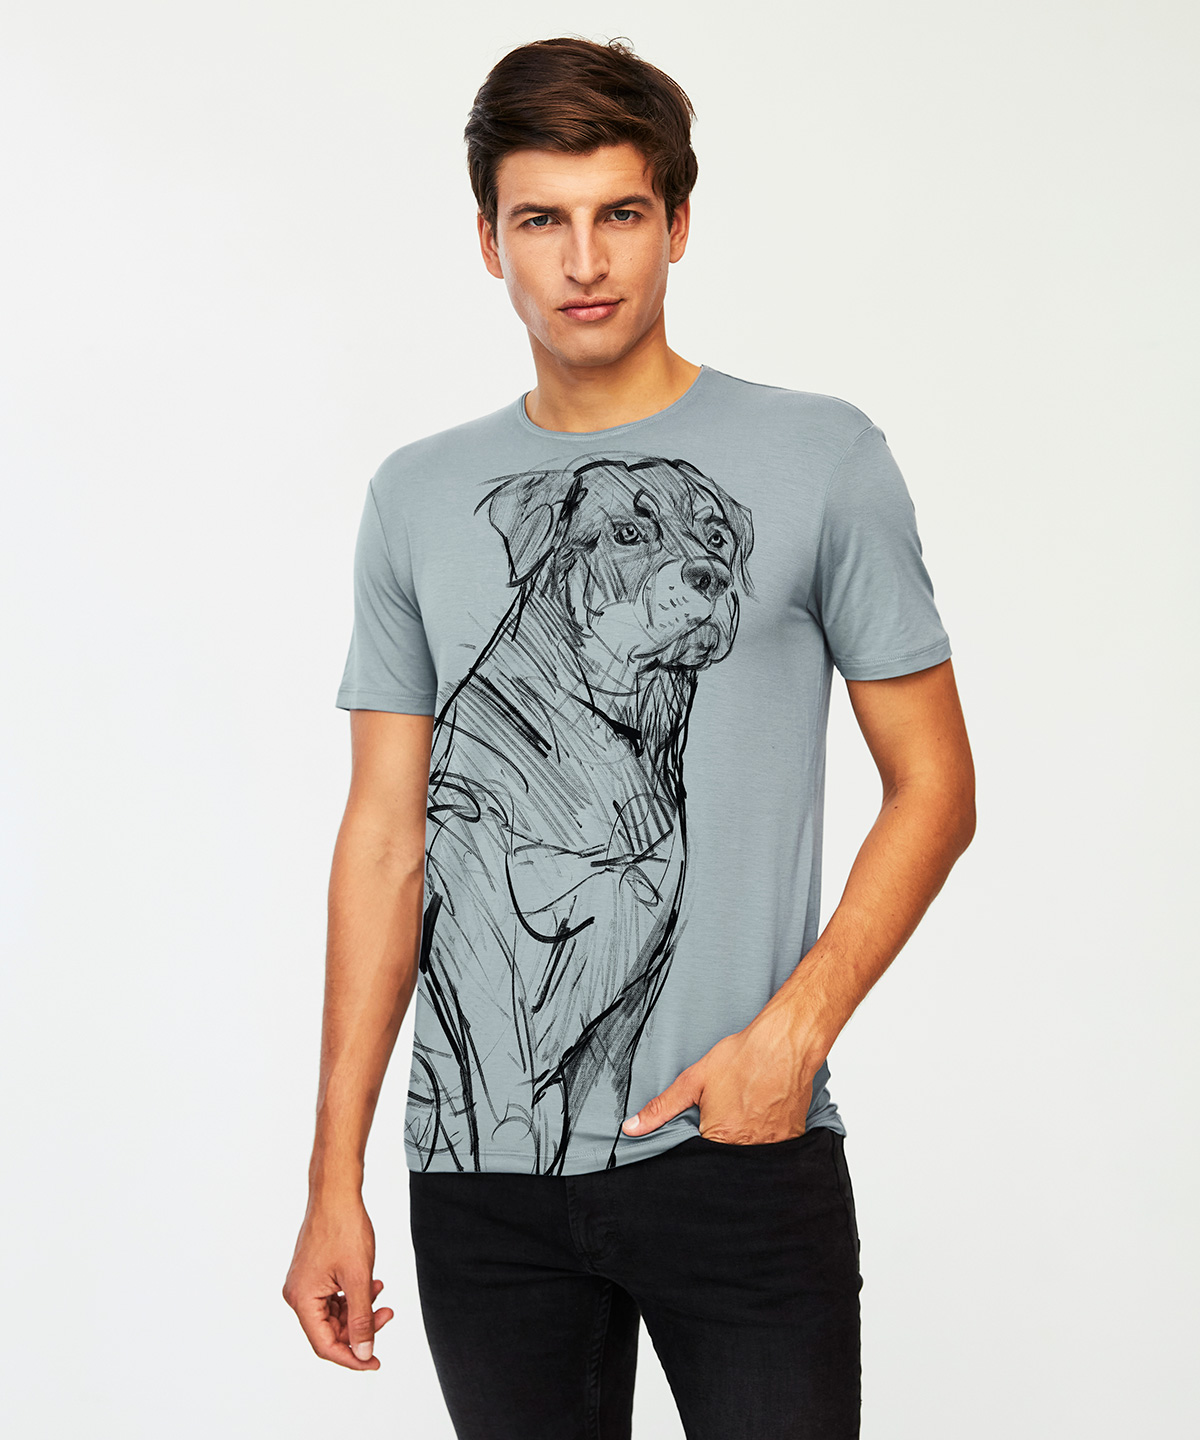 Rottweiler storm cloud t-shirt MAN